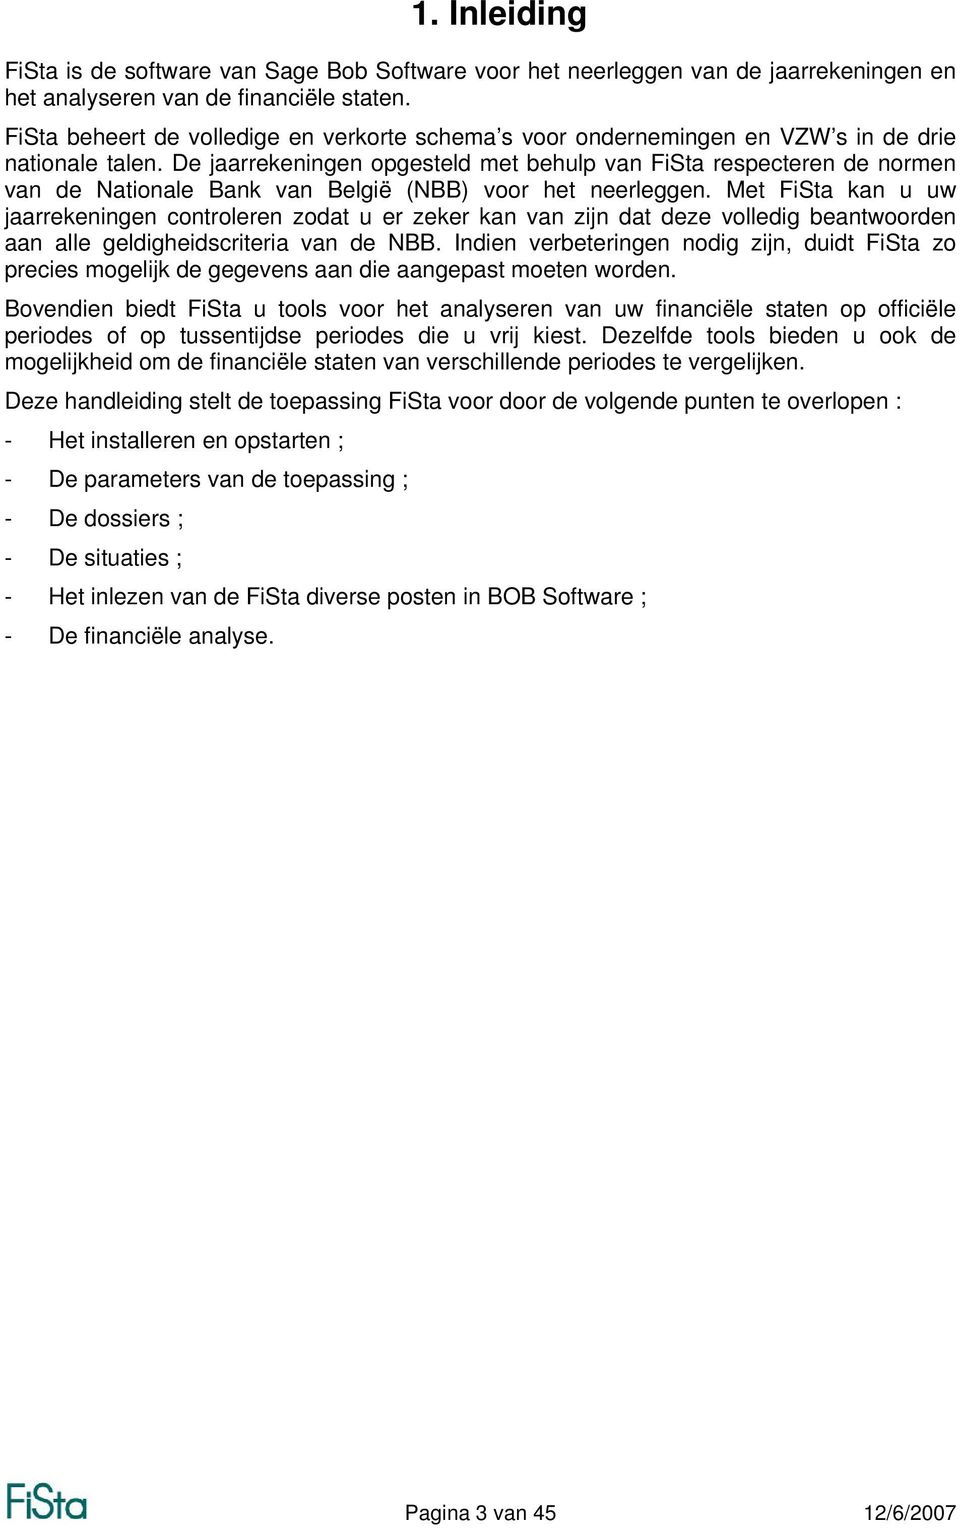 De jaarrekeningen opgesteld met behulp van FiSta respecteren de normen van de Nationale Bank van België (NBB) voor het neerleggen.